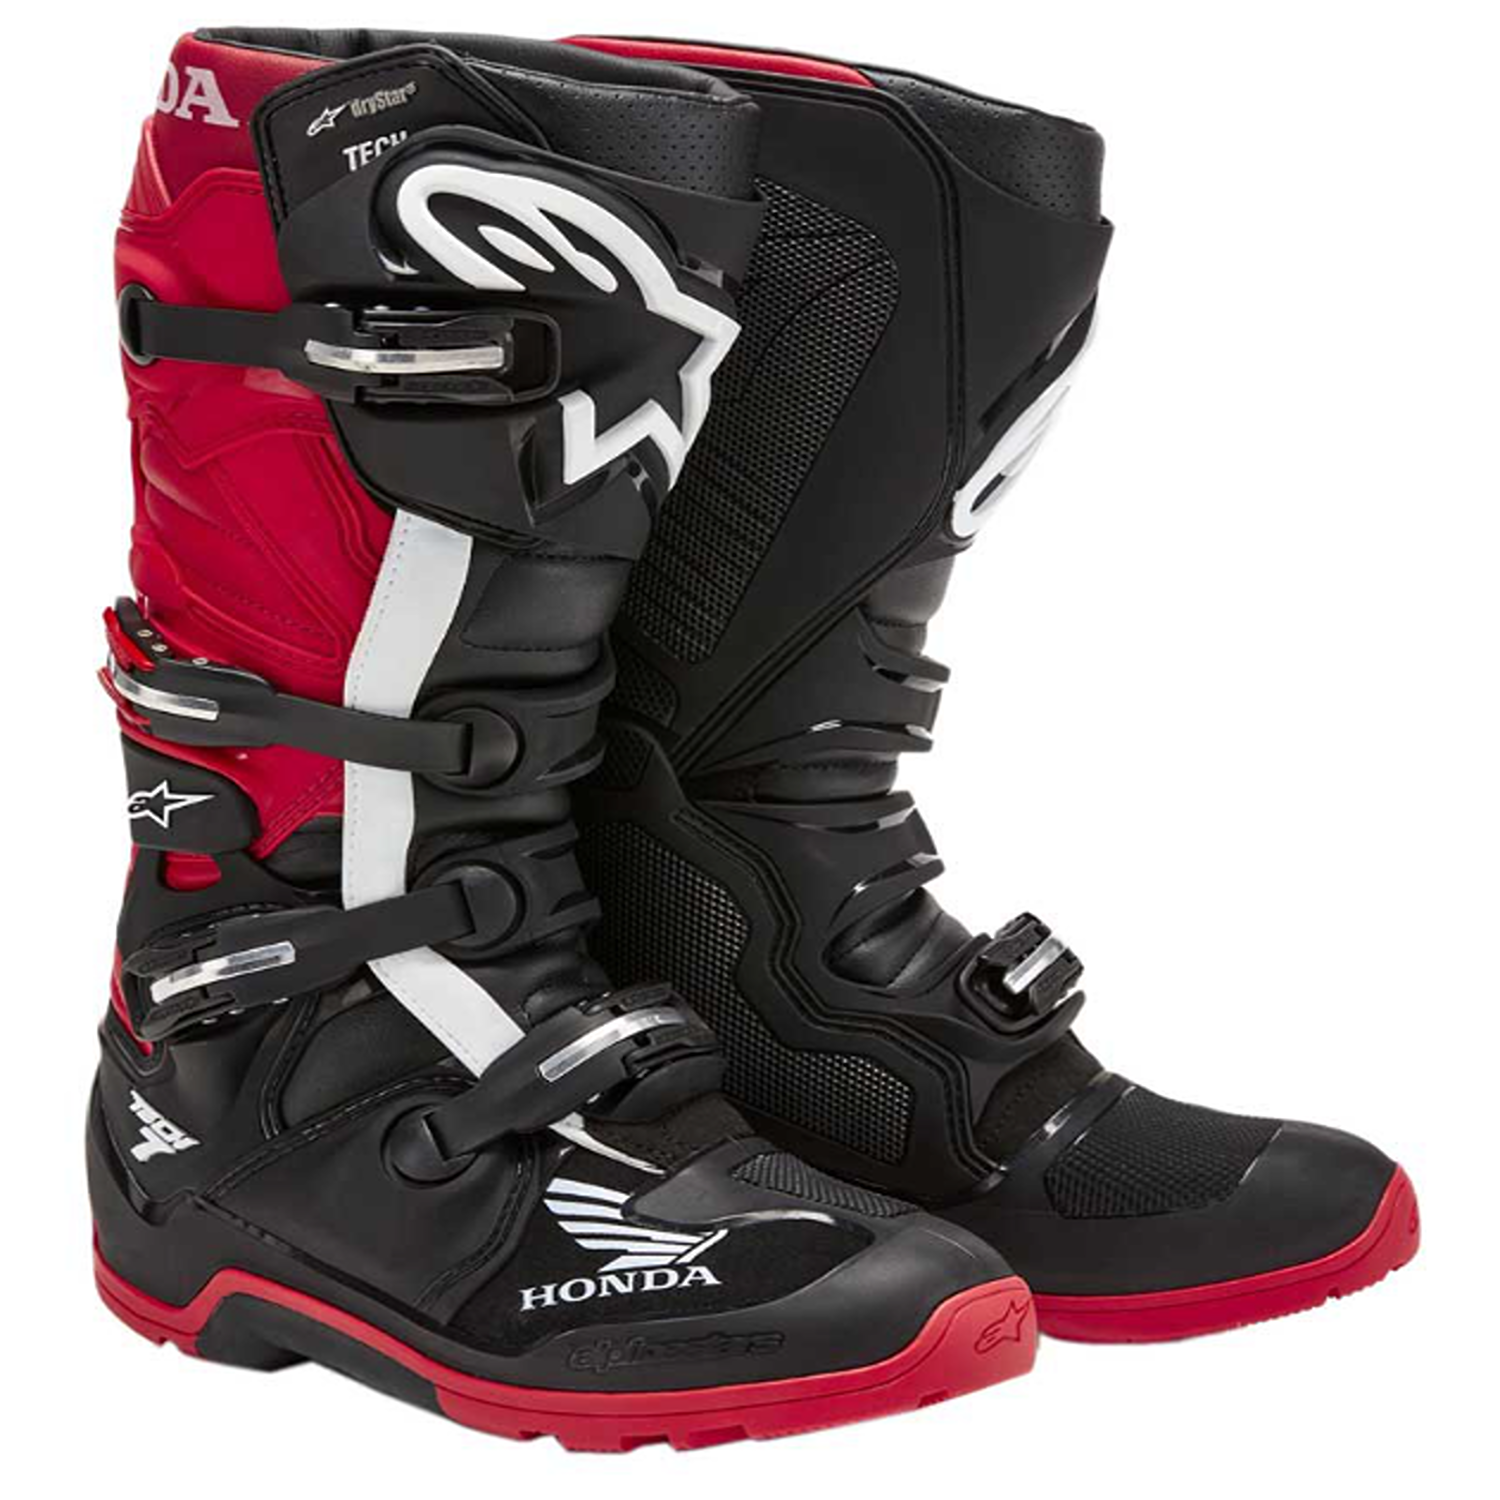 Image of Alpinestars Honda Tech 7 Enduro Drystar Boots Black Bright Red Größe US 16